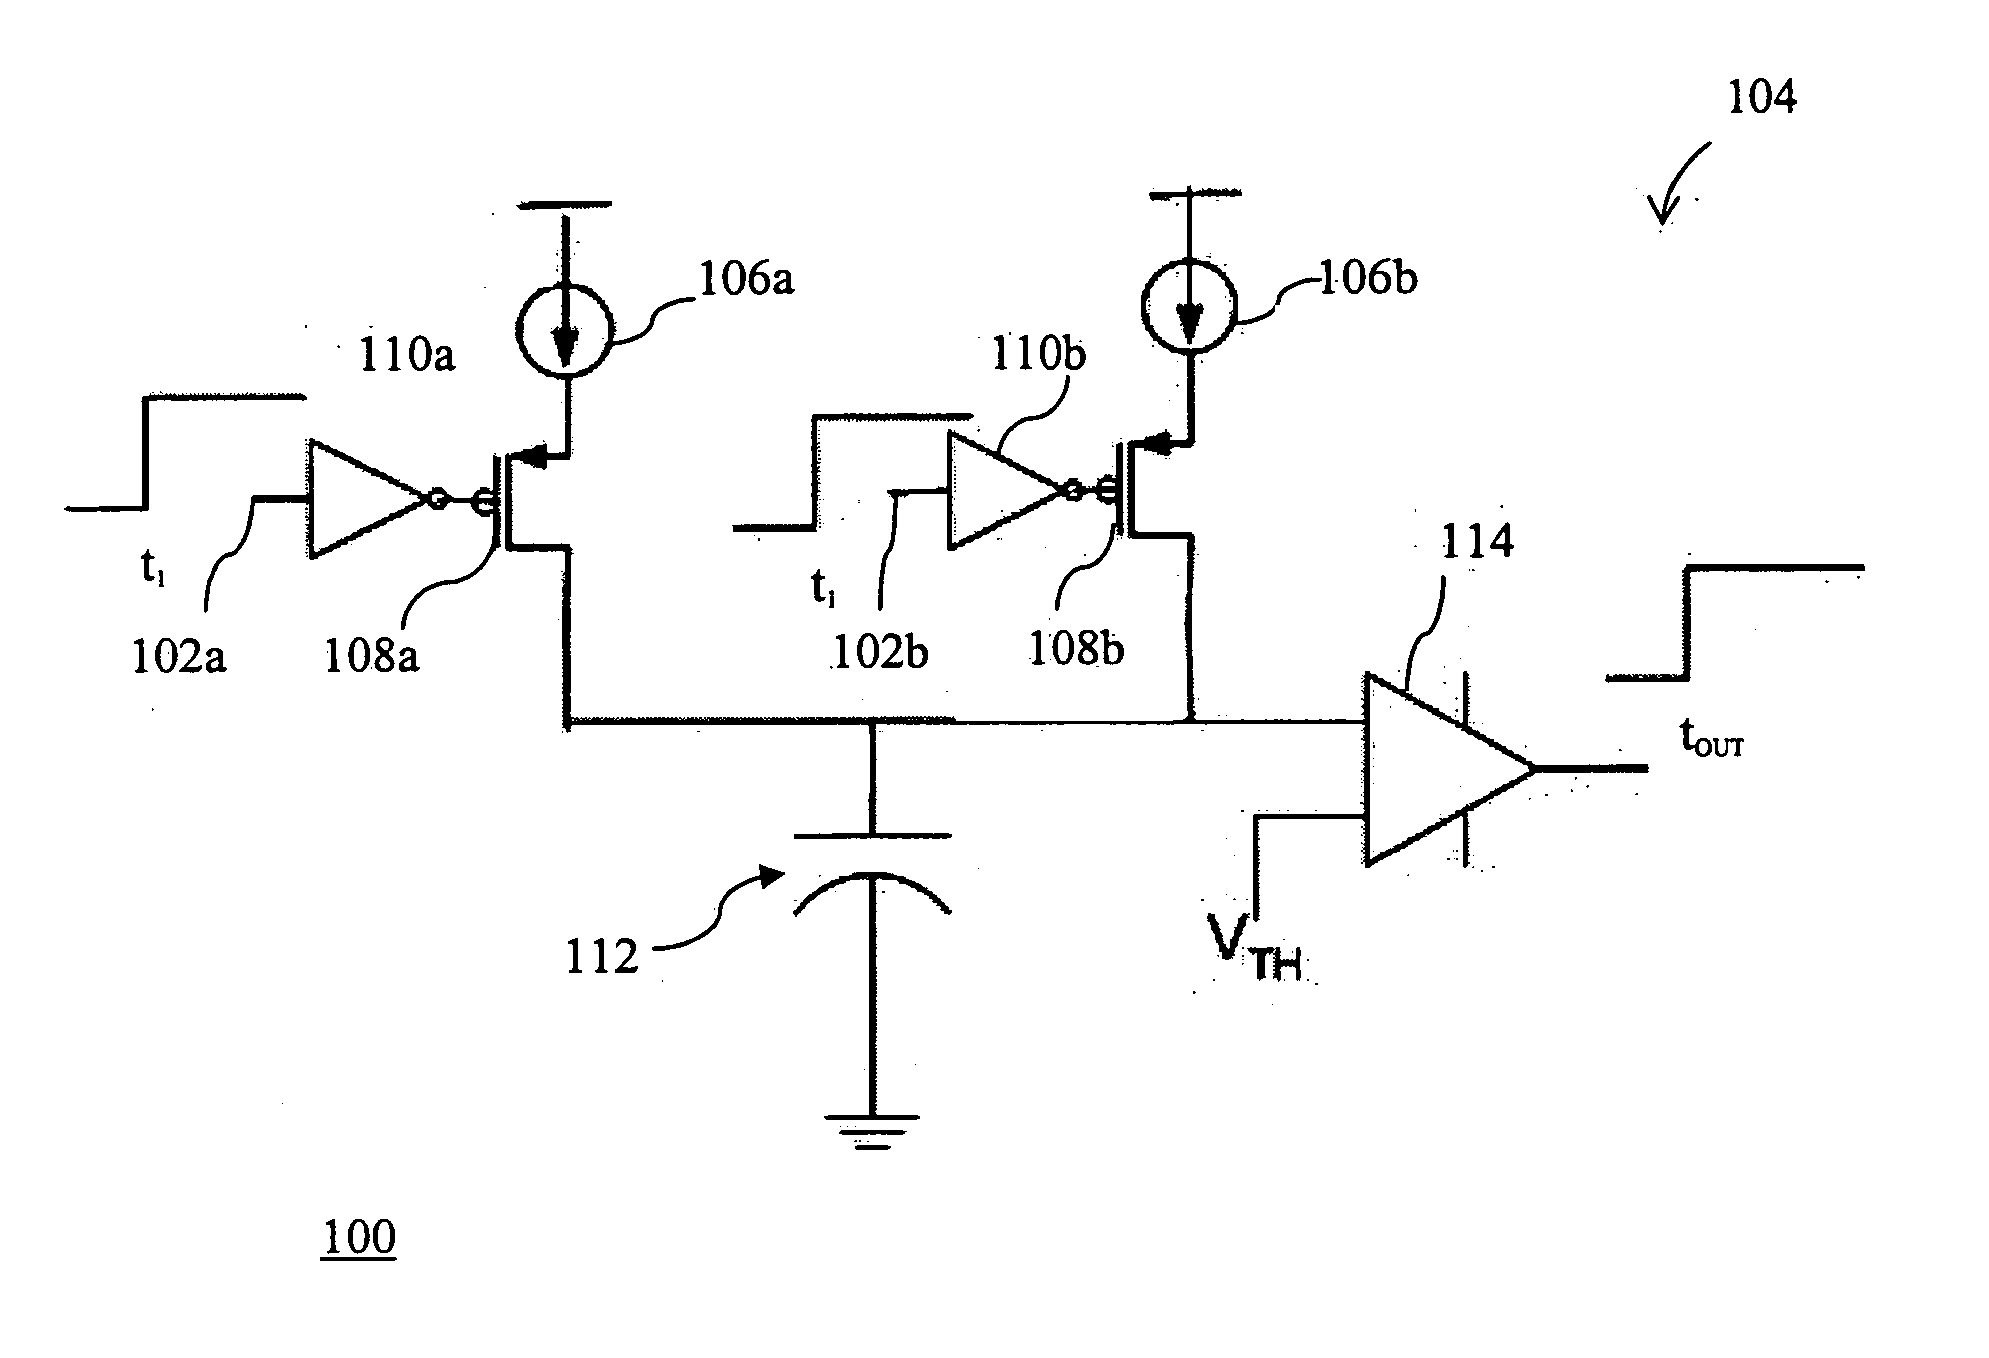 Time-mode analog computation circuits and methods